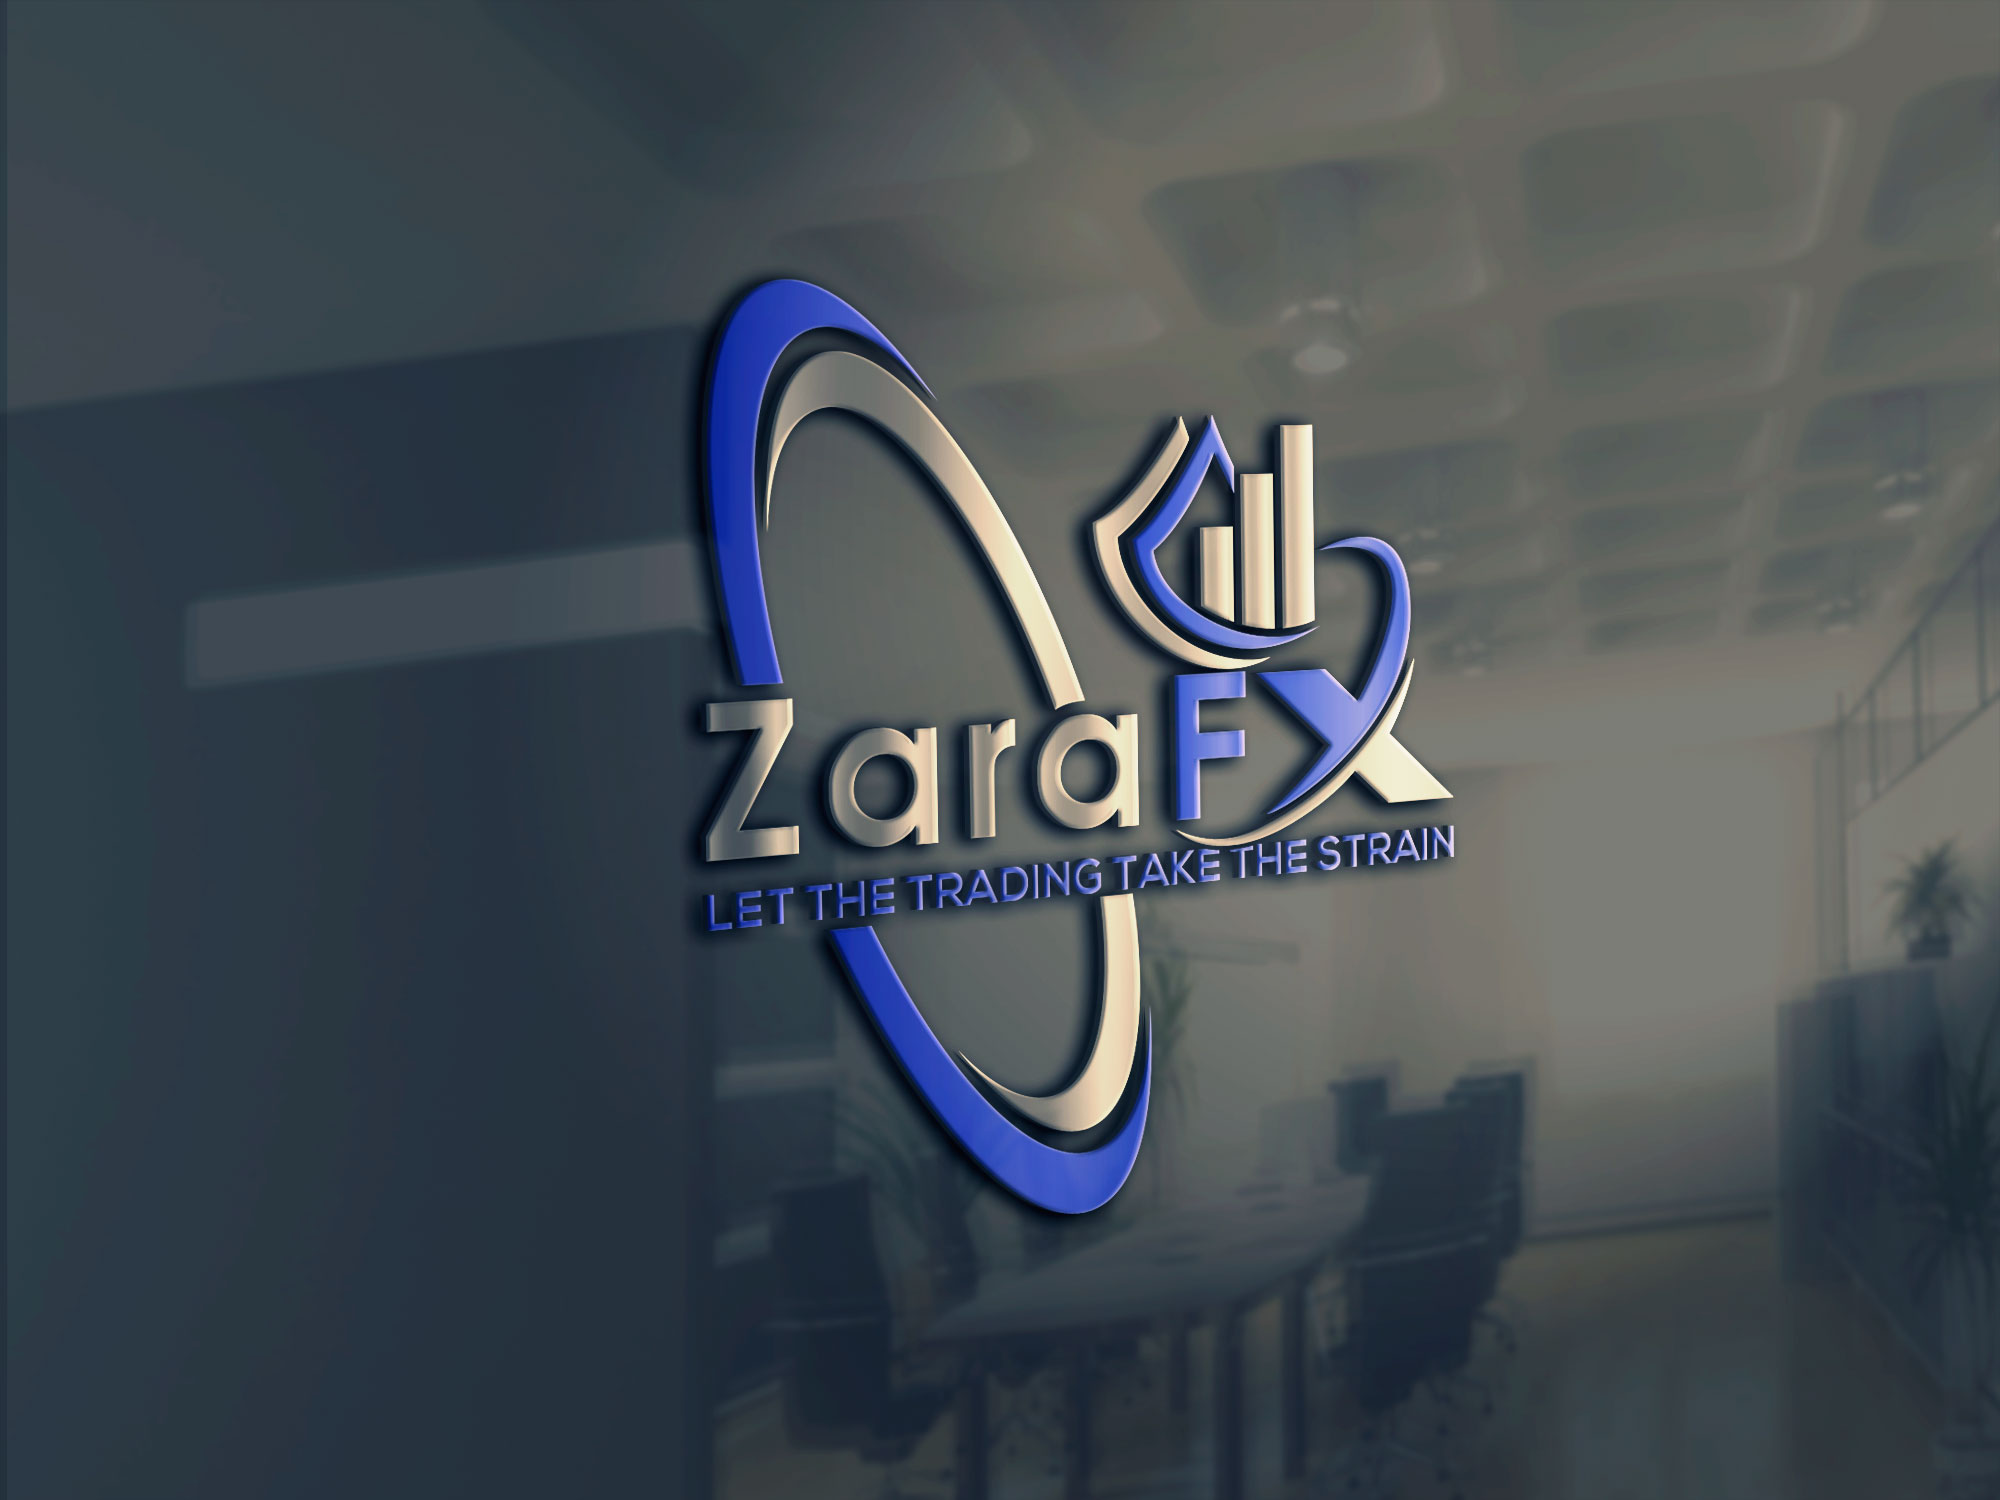 المدير الإداري السابق لشركة BUX ينضم إلى Zara FX كرئيس تنفيذي لقسم العمليات التجارية